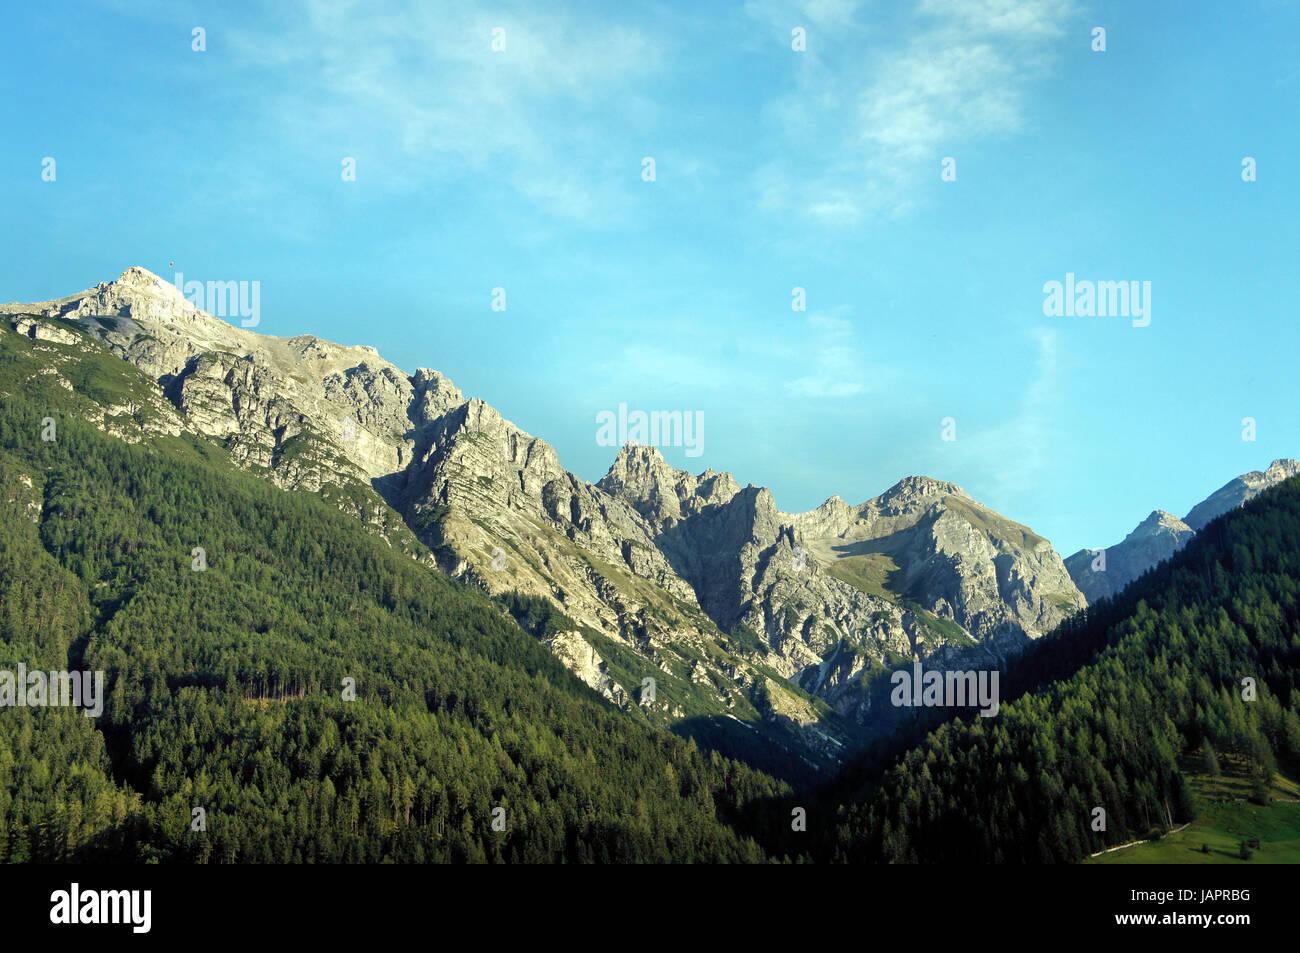 Berglandschaft Im Stubaital in Tirol, Oesterreich, Felsen Und Wälder, Blauer Himmel Berg Landschaft im Stubaital in Tirol, Österreich, Felsen und Wälder, blauer Himmel Stockfoto